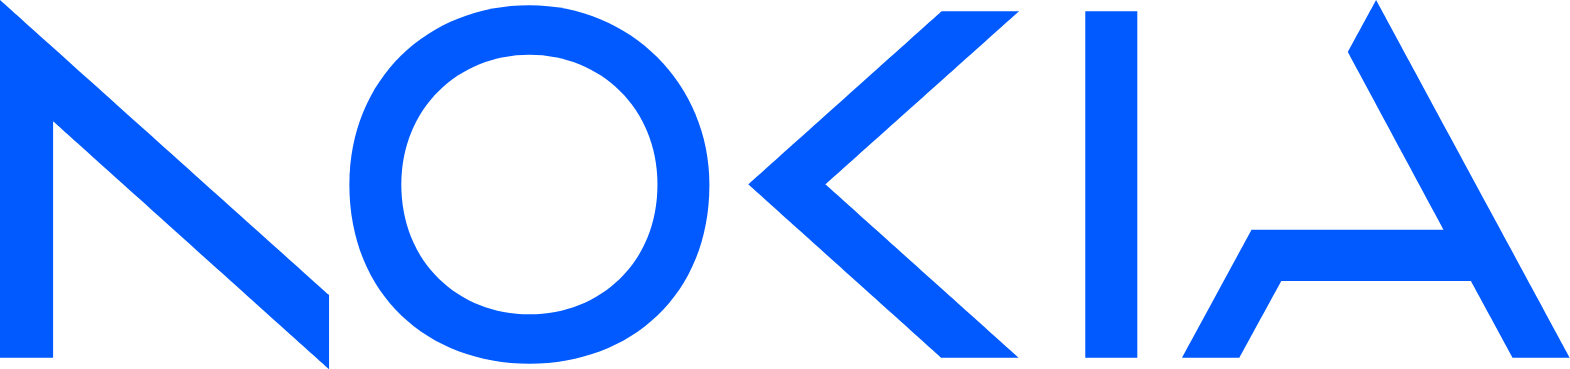 Nokia logo large (transparent PNG)